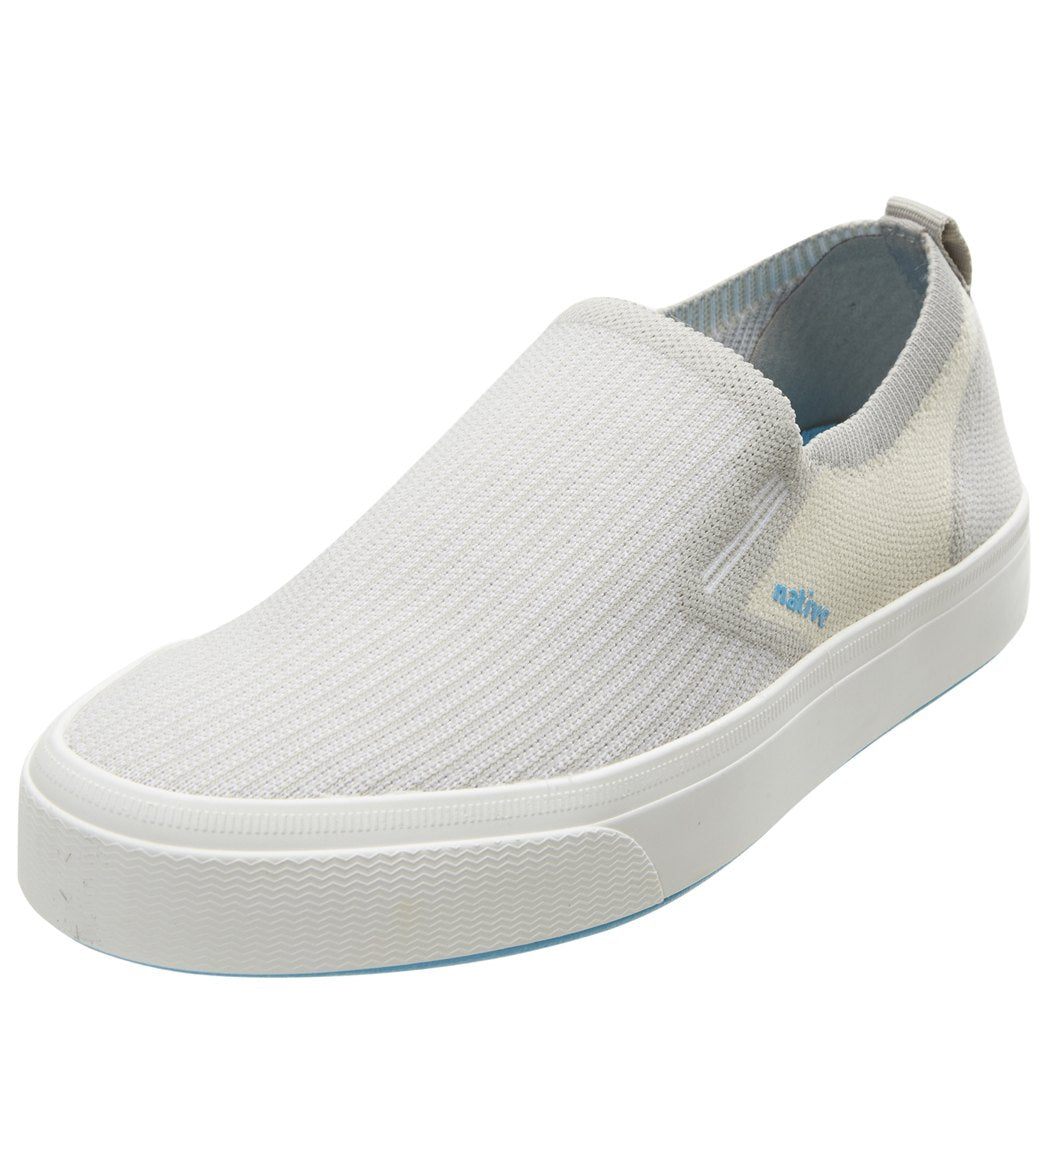 Native Miles 2.0 Liteknit Shoes - Pigeon Grey/Bone White/Shell White W10/M8 - Swimoutlet.com